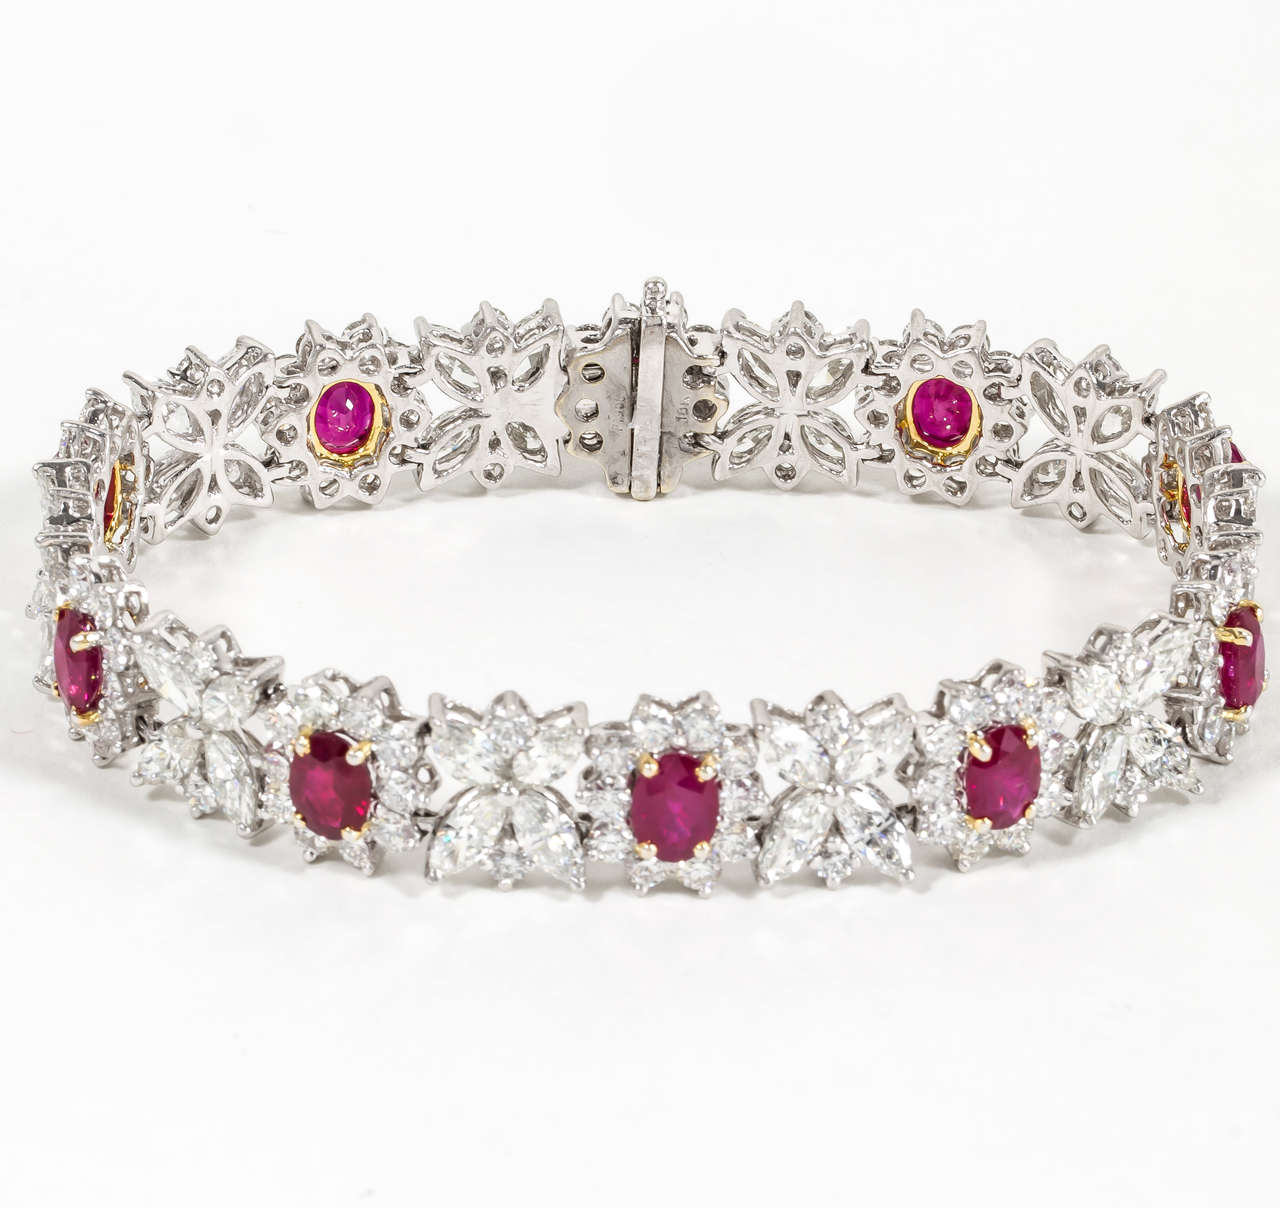 
Elegant bracelet en platine serti de rubis et de diamants. 

11,41 carats de rubis birman ovale. 

Plus de 22 carats de magnifiques diamants blancs.